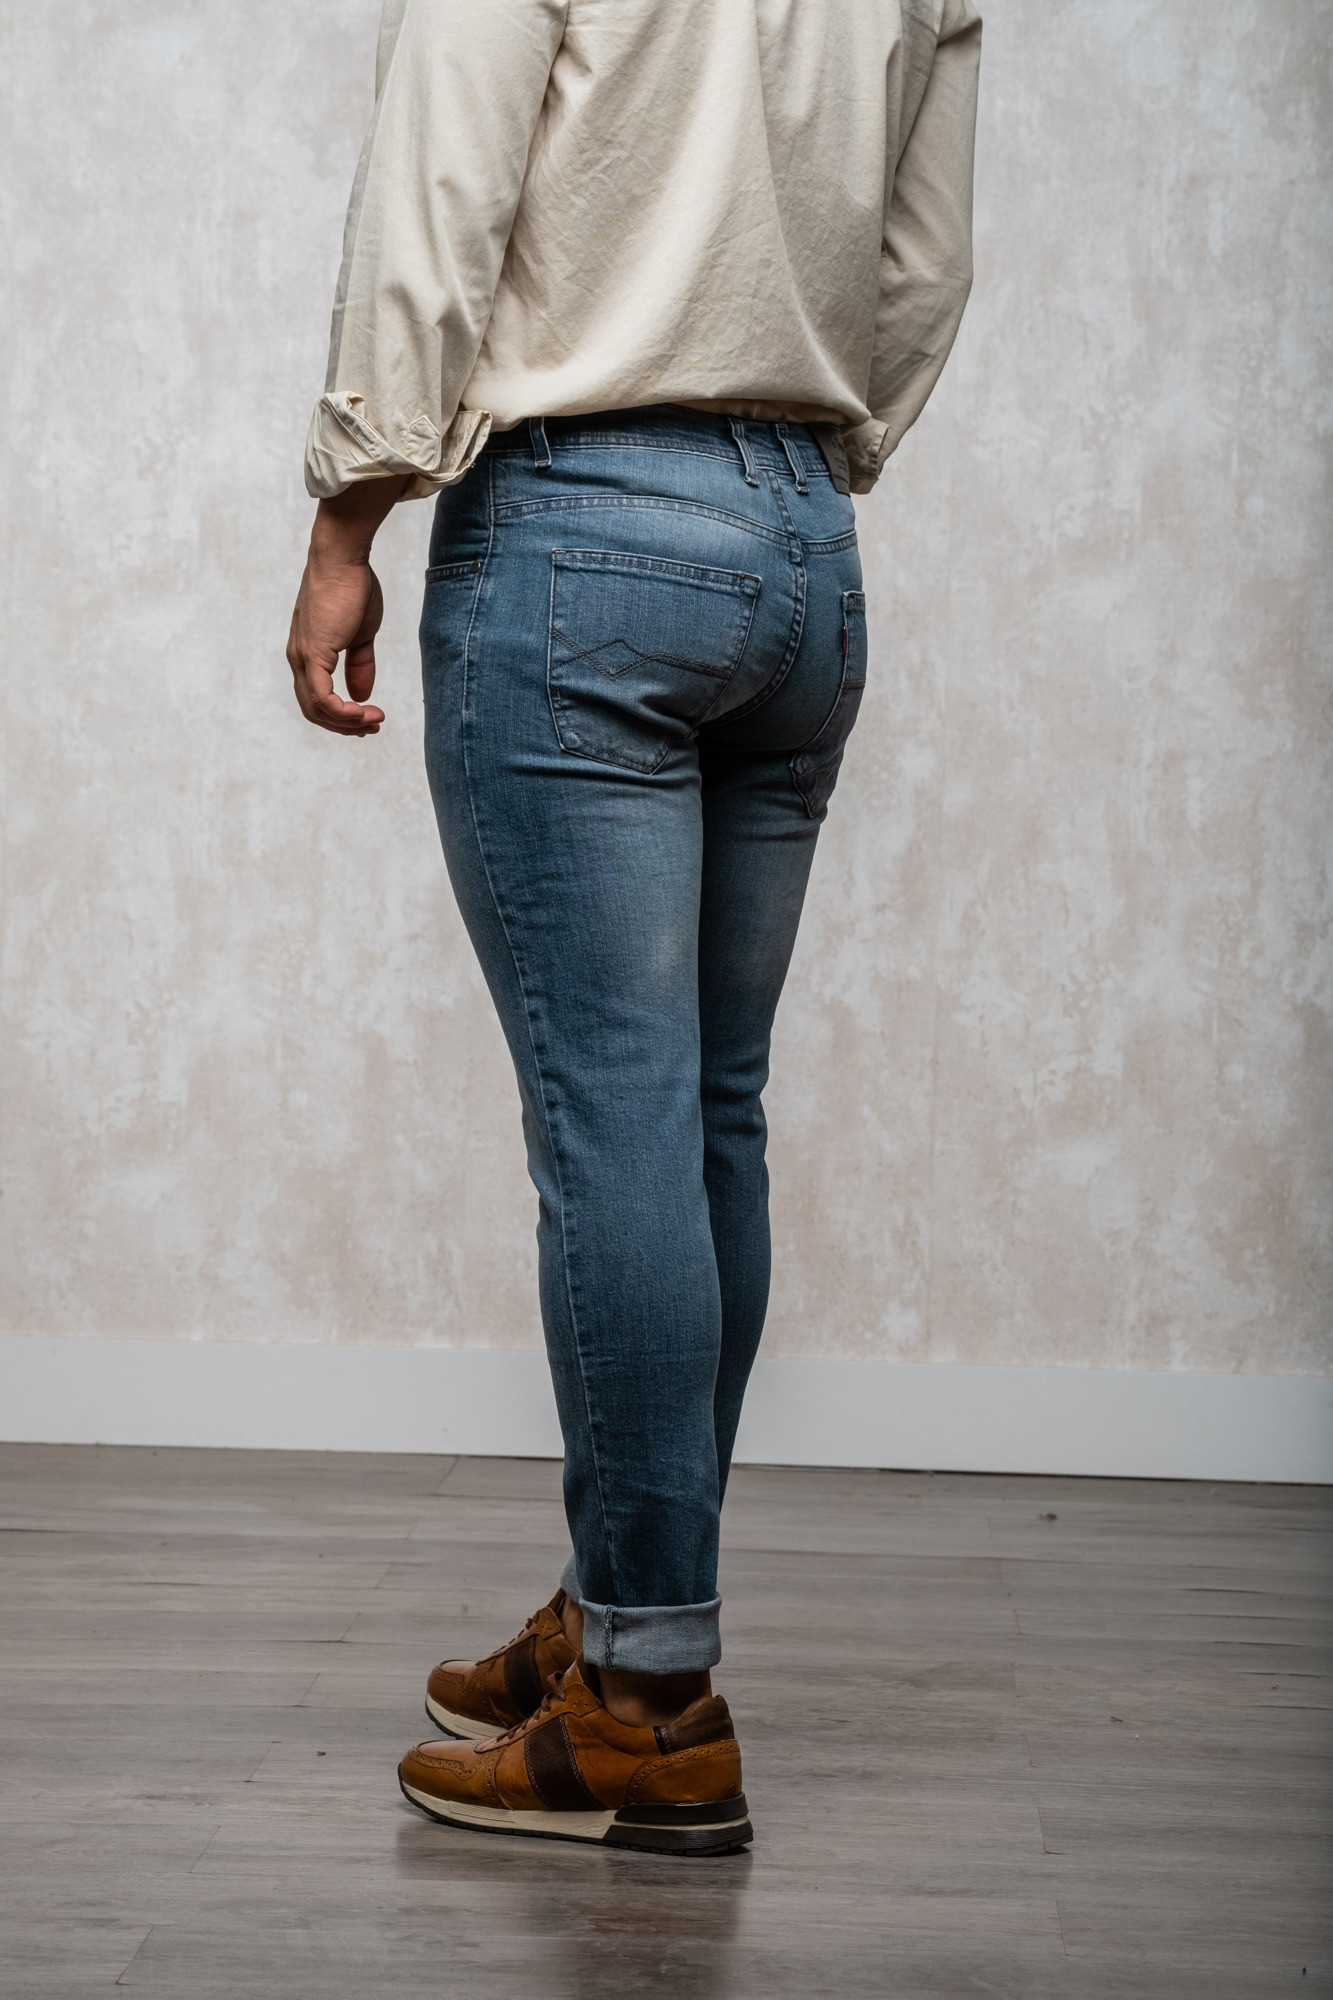 Un pantalón vaquero de corte skinny, color gris y fabricado en España. 

El tejido utilizado es de alta calidad y se caracteriza por su durabilidad y resistencia al desgaste. El corte skinny es un corte ajustado que sigue las líneas del cuerpo, dando un